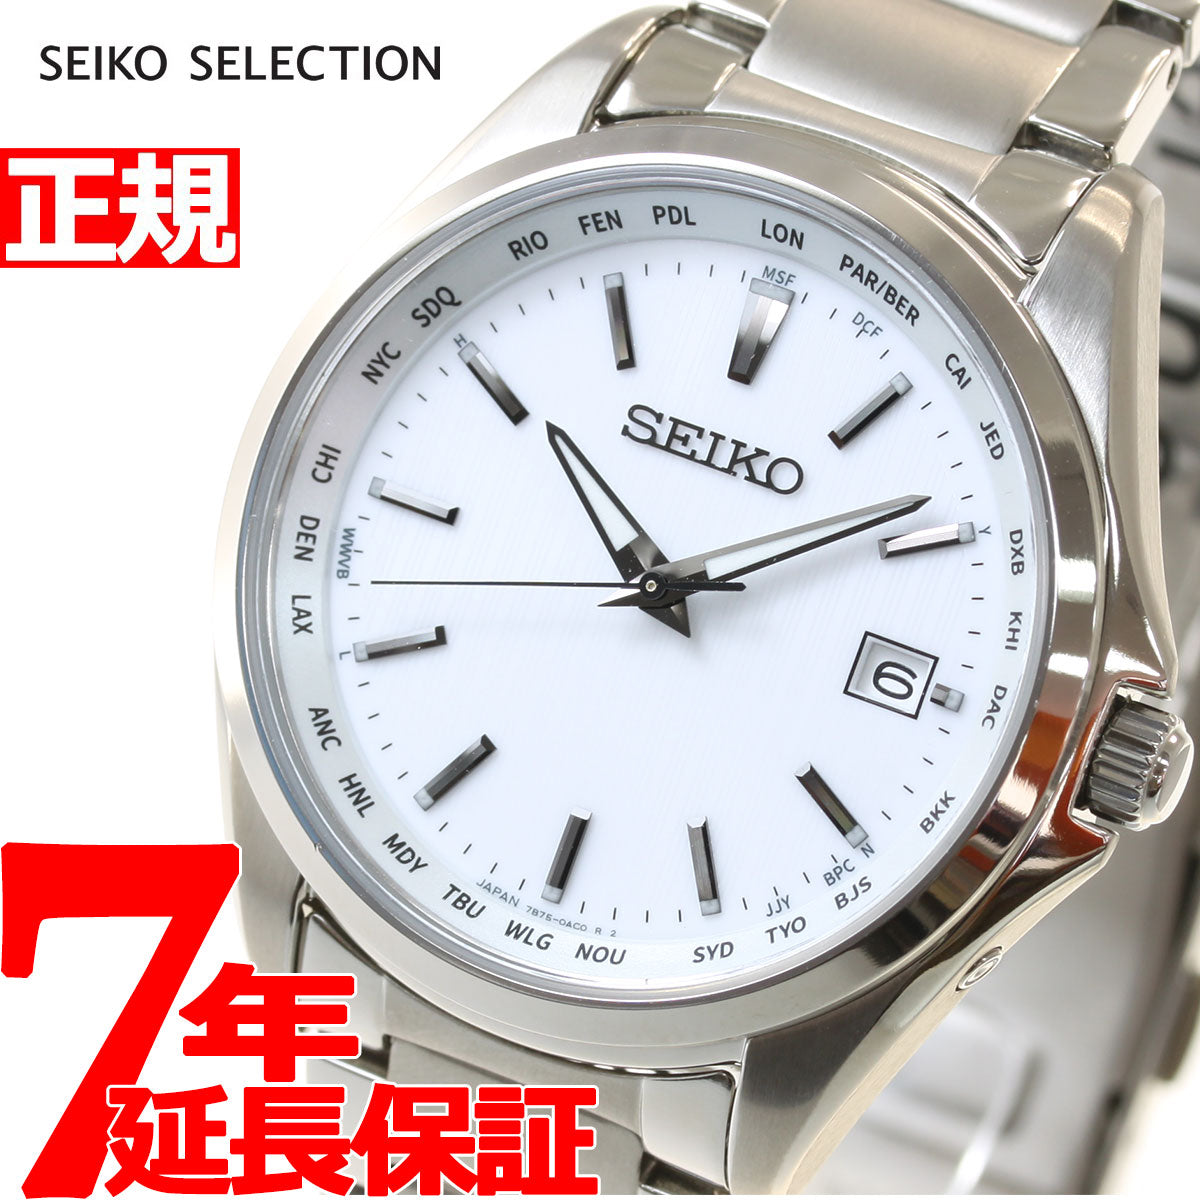 セイコー セレクション SEIKO SELECTION 電波 ソーラー 電波時計 腕時計 メンズ SBTM287 – neel selectshop